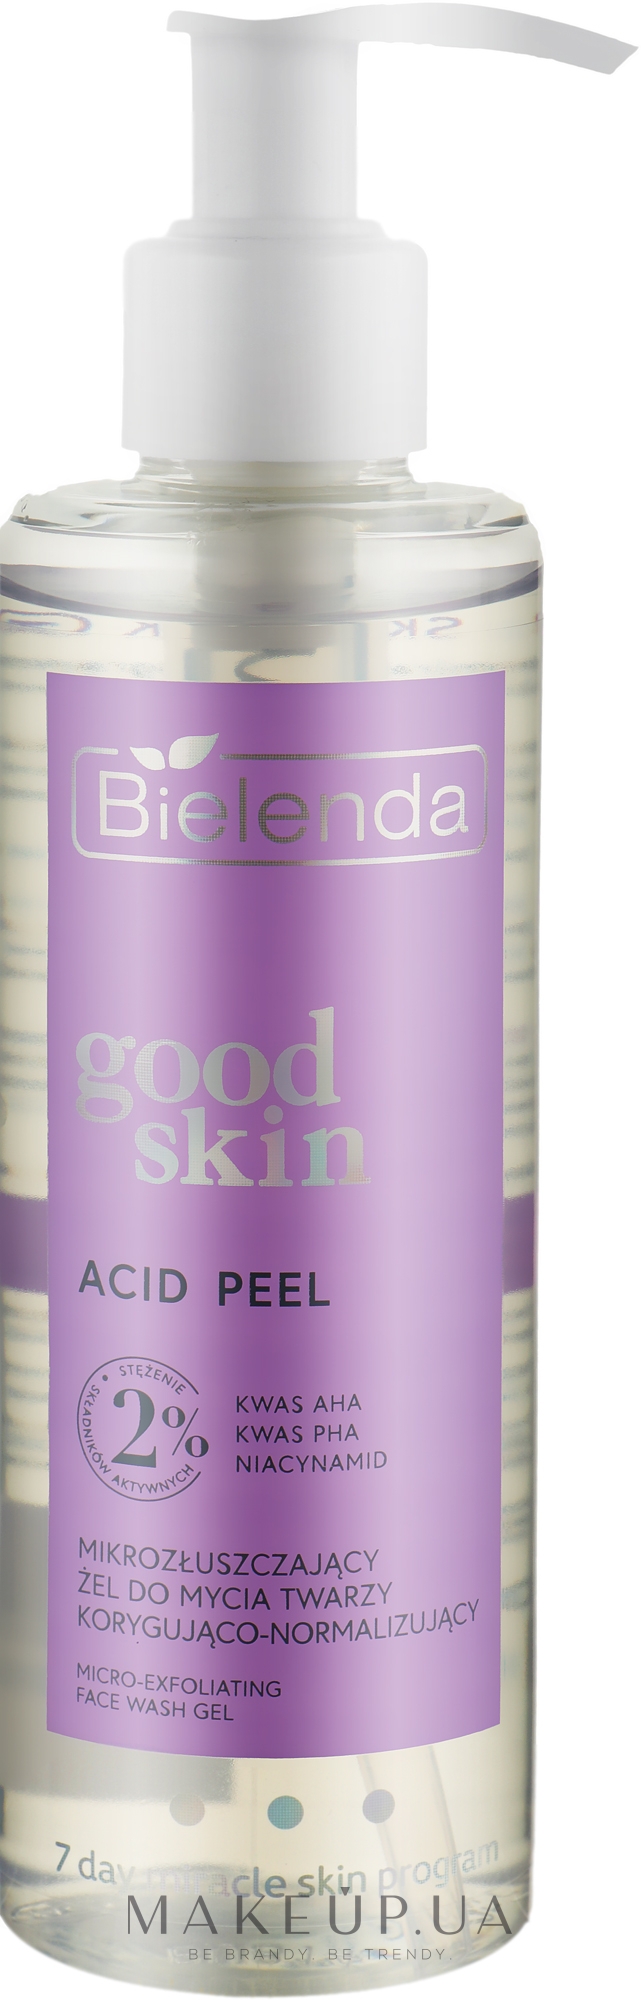 Коригувальний і нормалізувальний мікровідлущувальний гель для вмивання - Bielenda Good Skin Acid Peel Micro-Exfoliating Corrective & Normalizing Face Wash Gel — фото 190g